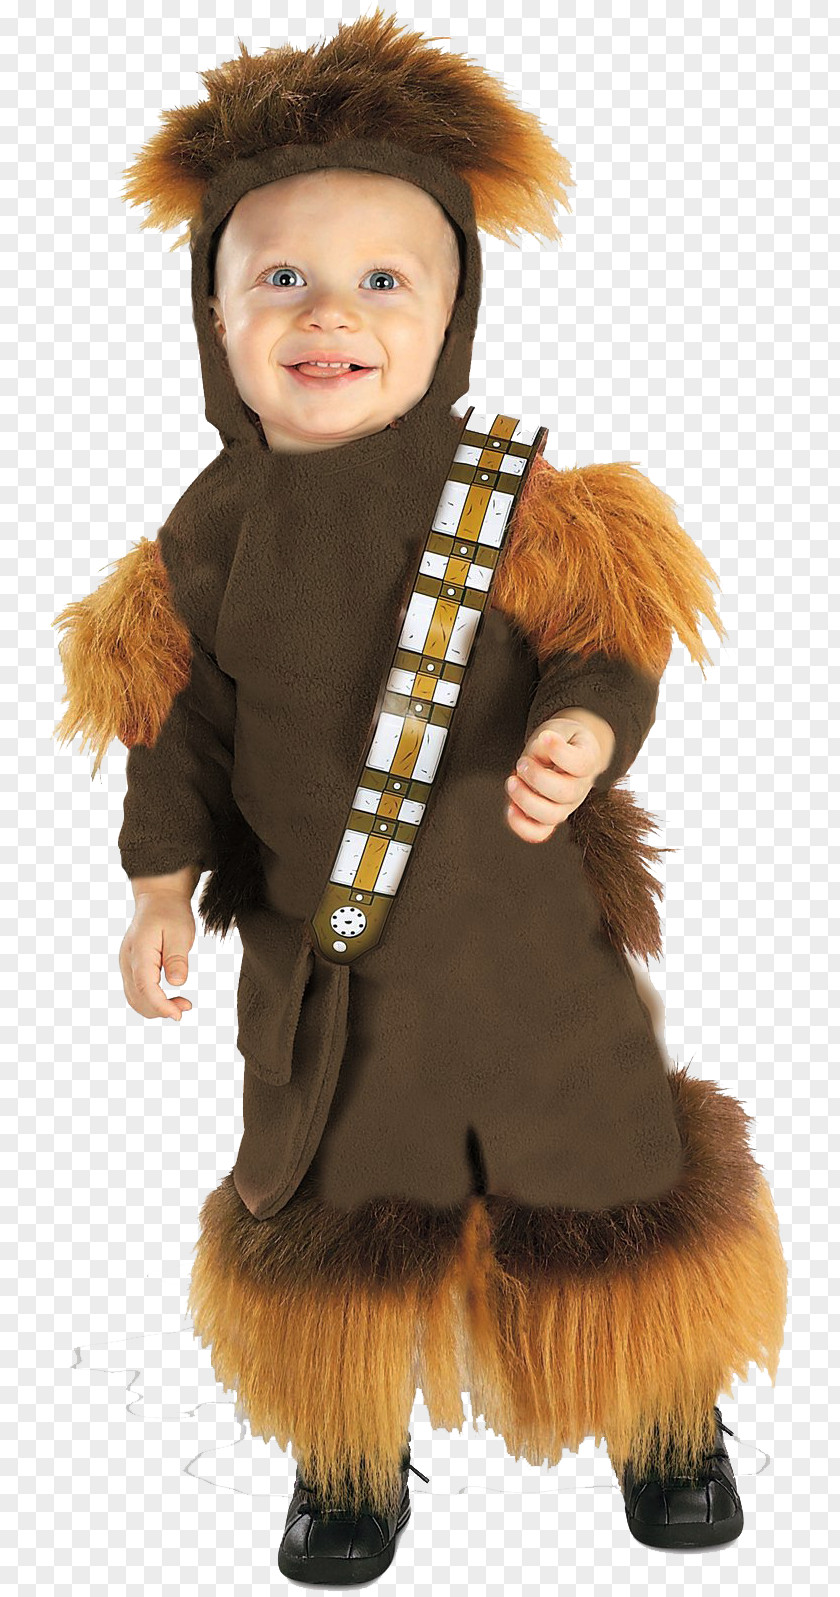 Star Wars Chewbacca Leia Organa Anakin Skywalker Costume PNG